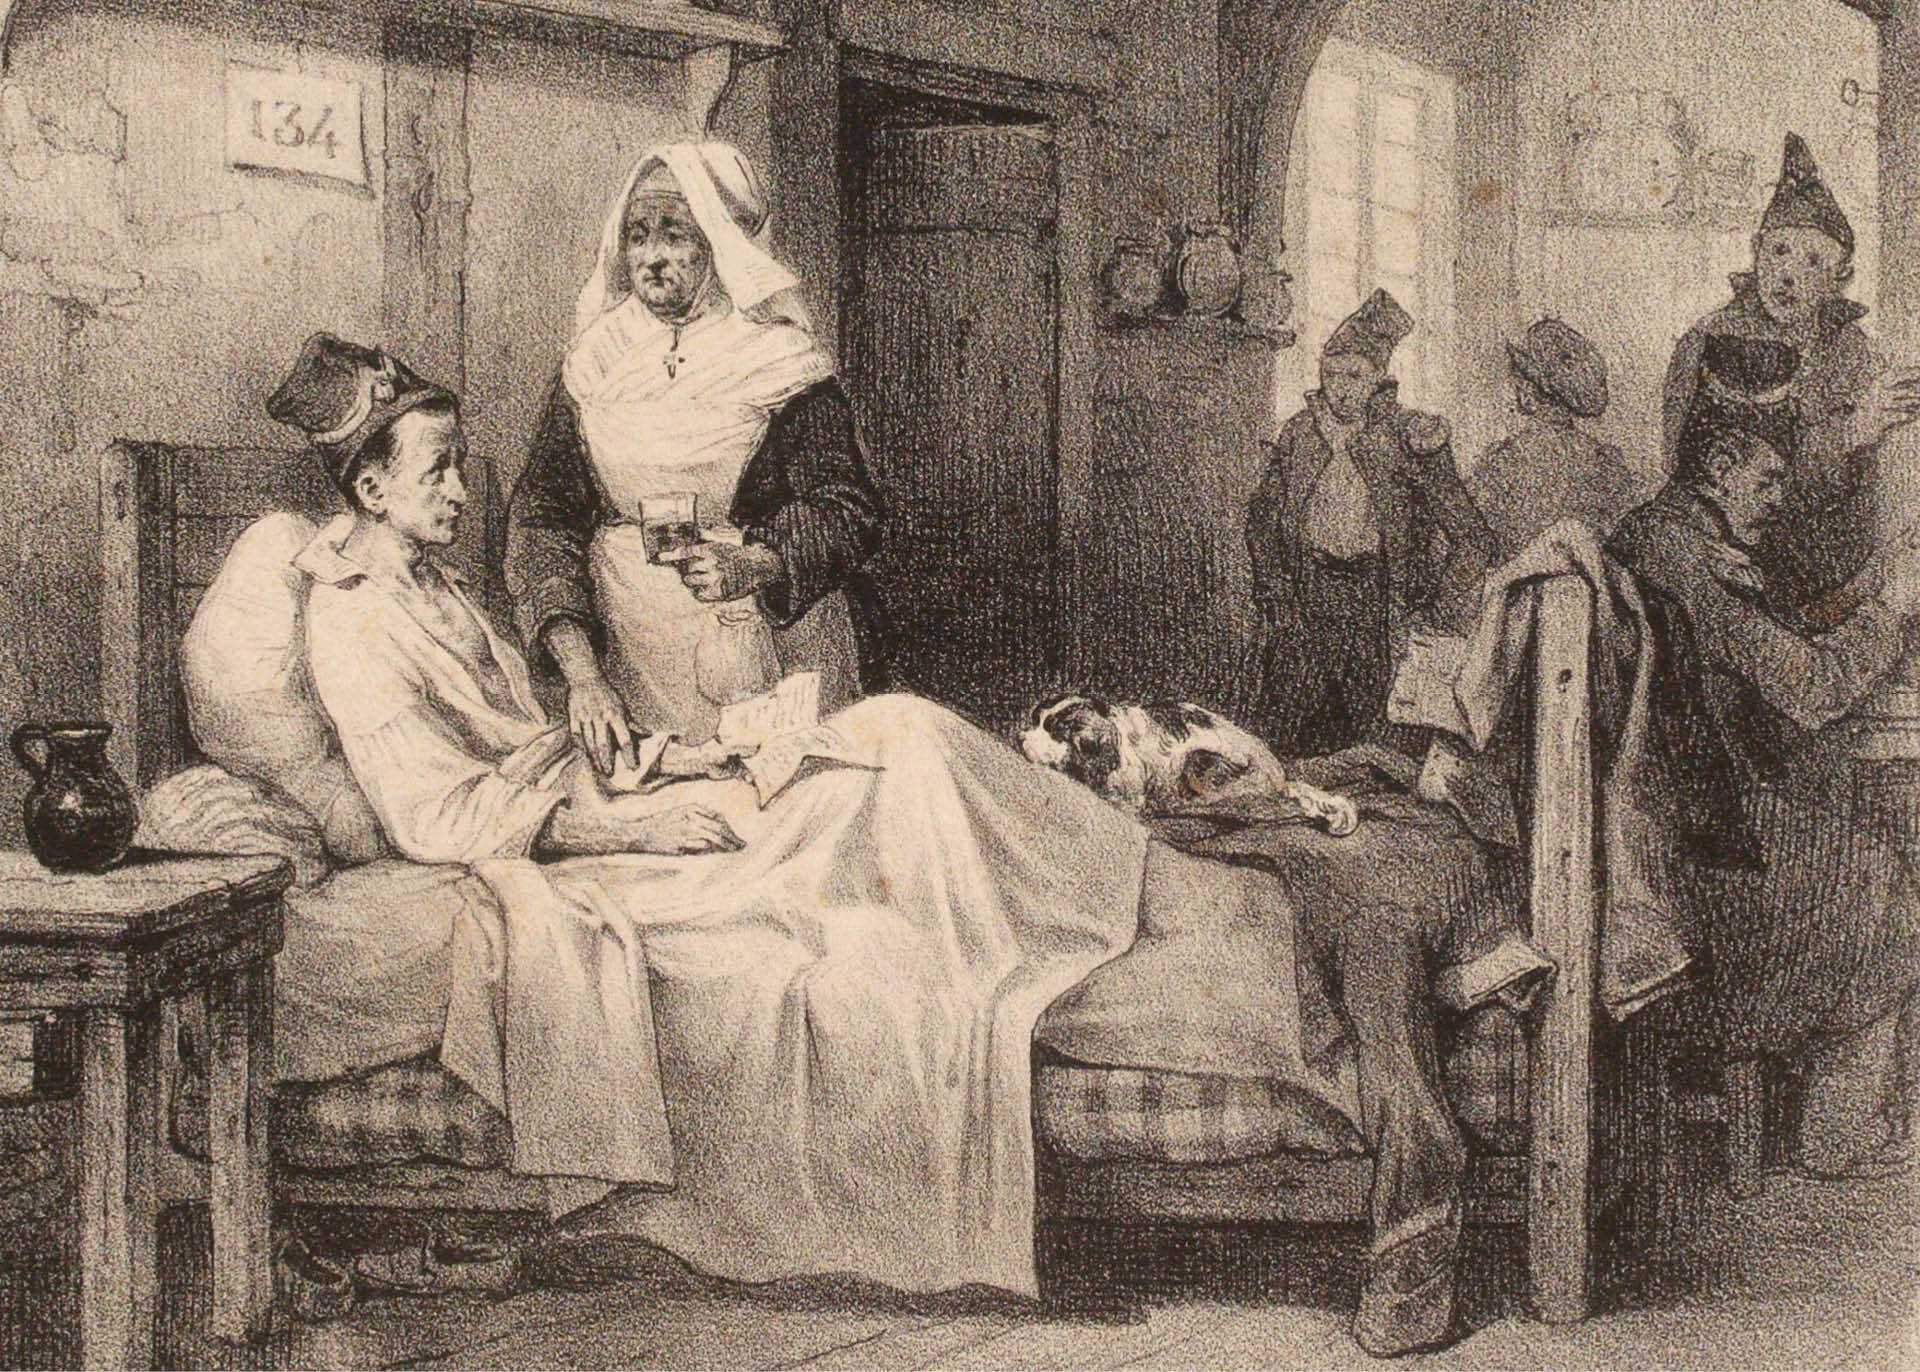 Pielęgniarka opiekuje się pacjentką chorującą na nostalgię, litografia z 1833 r.